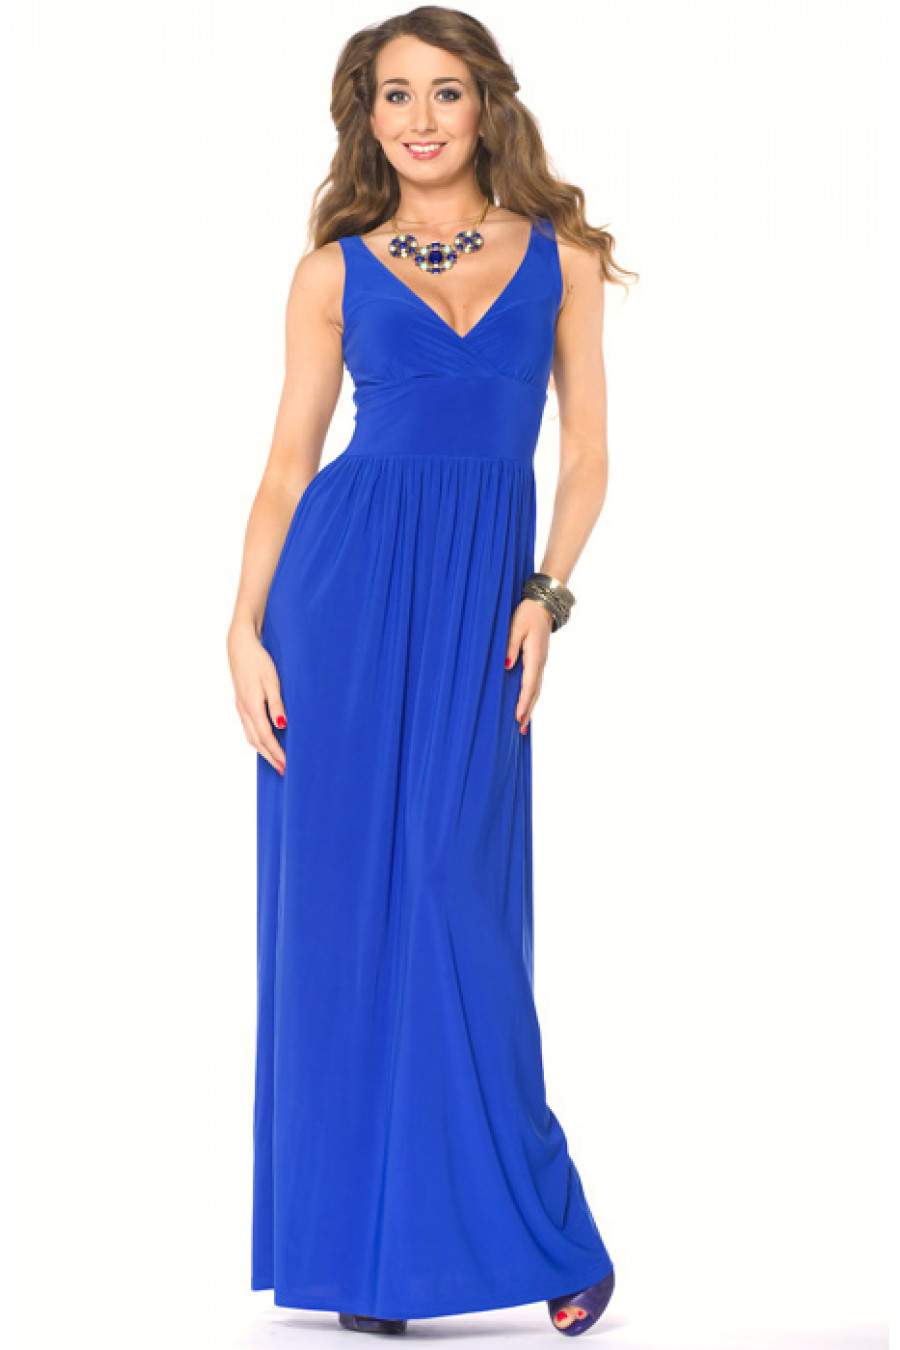 Где купить длинные платья. Синее платье длинное. Синее платье в пол. Платье летнее синее длинное. Платье василькового цвета длинное.